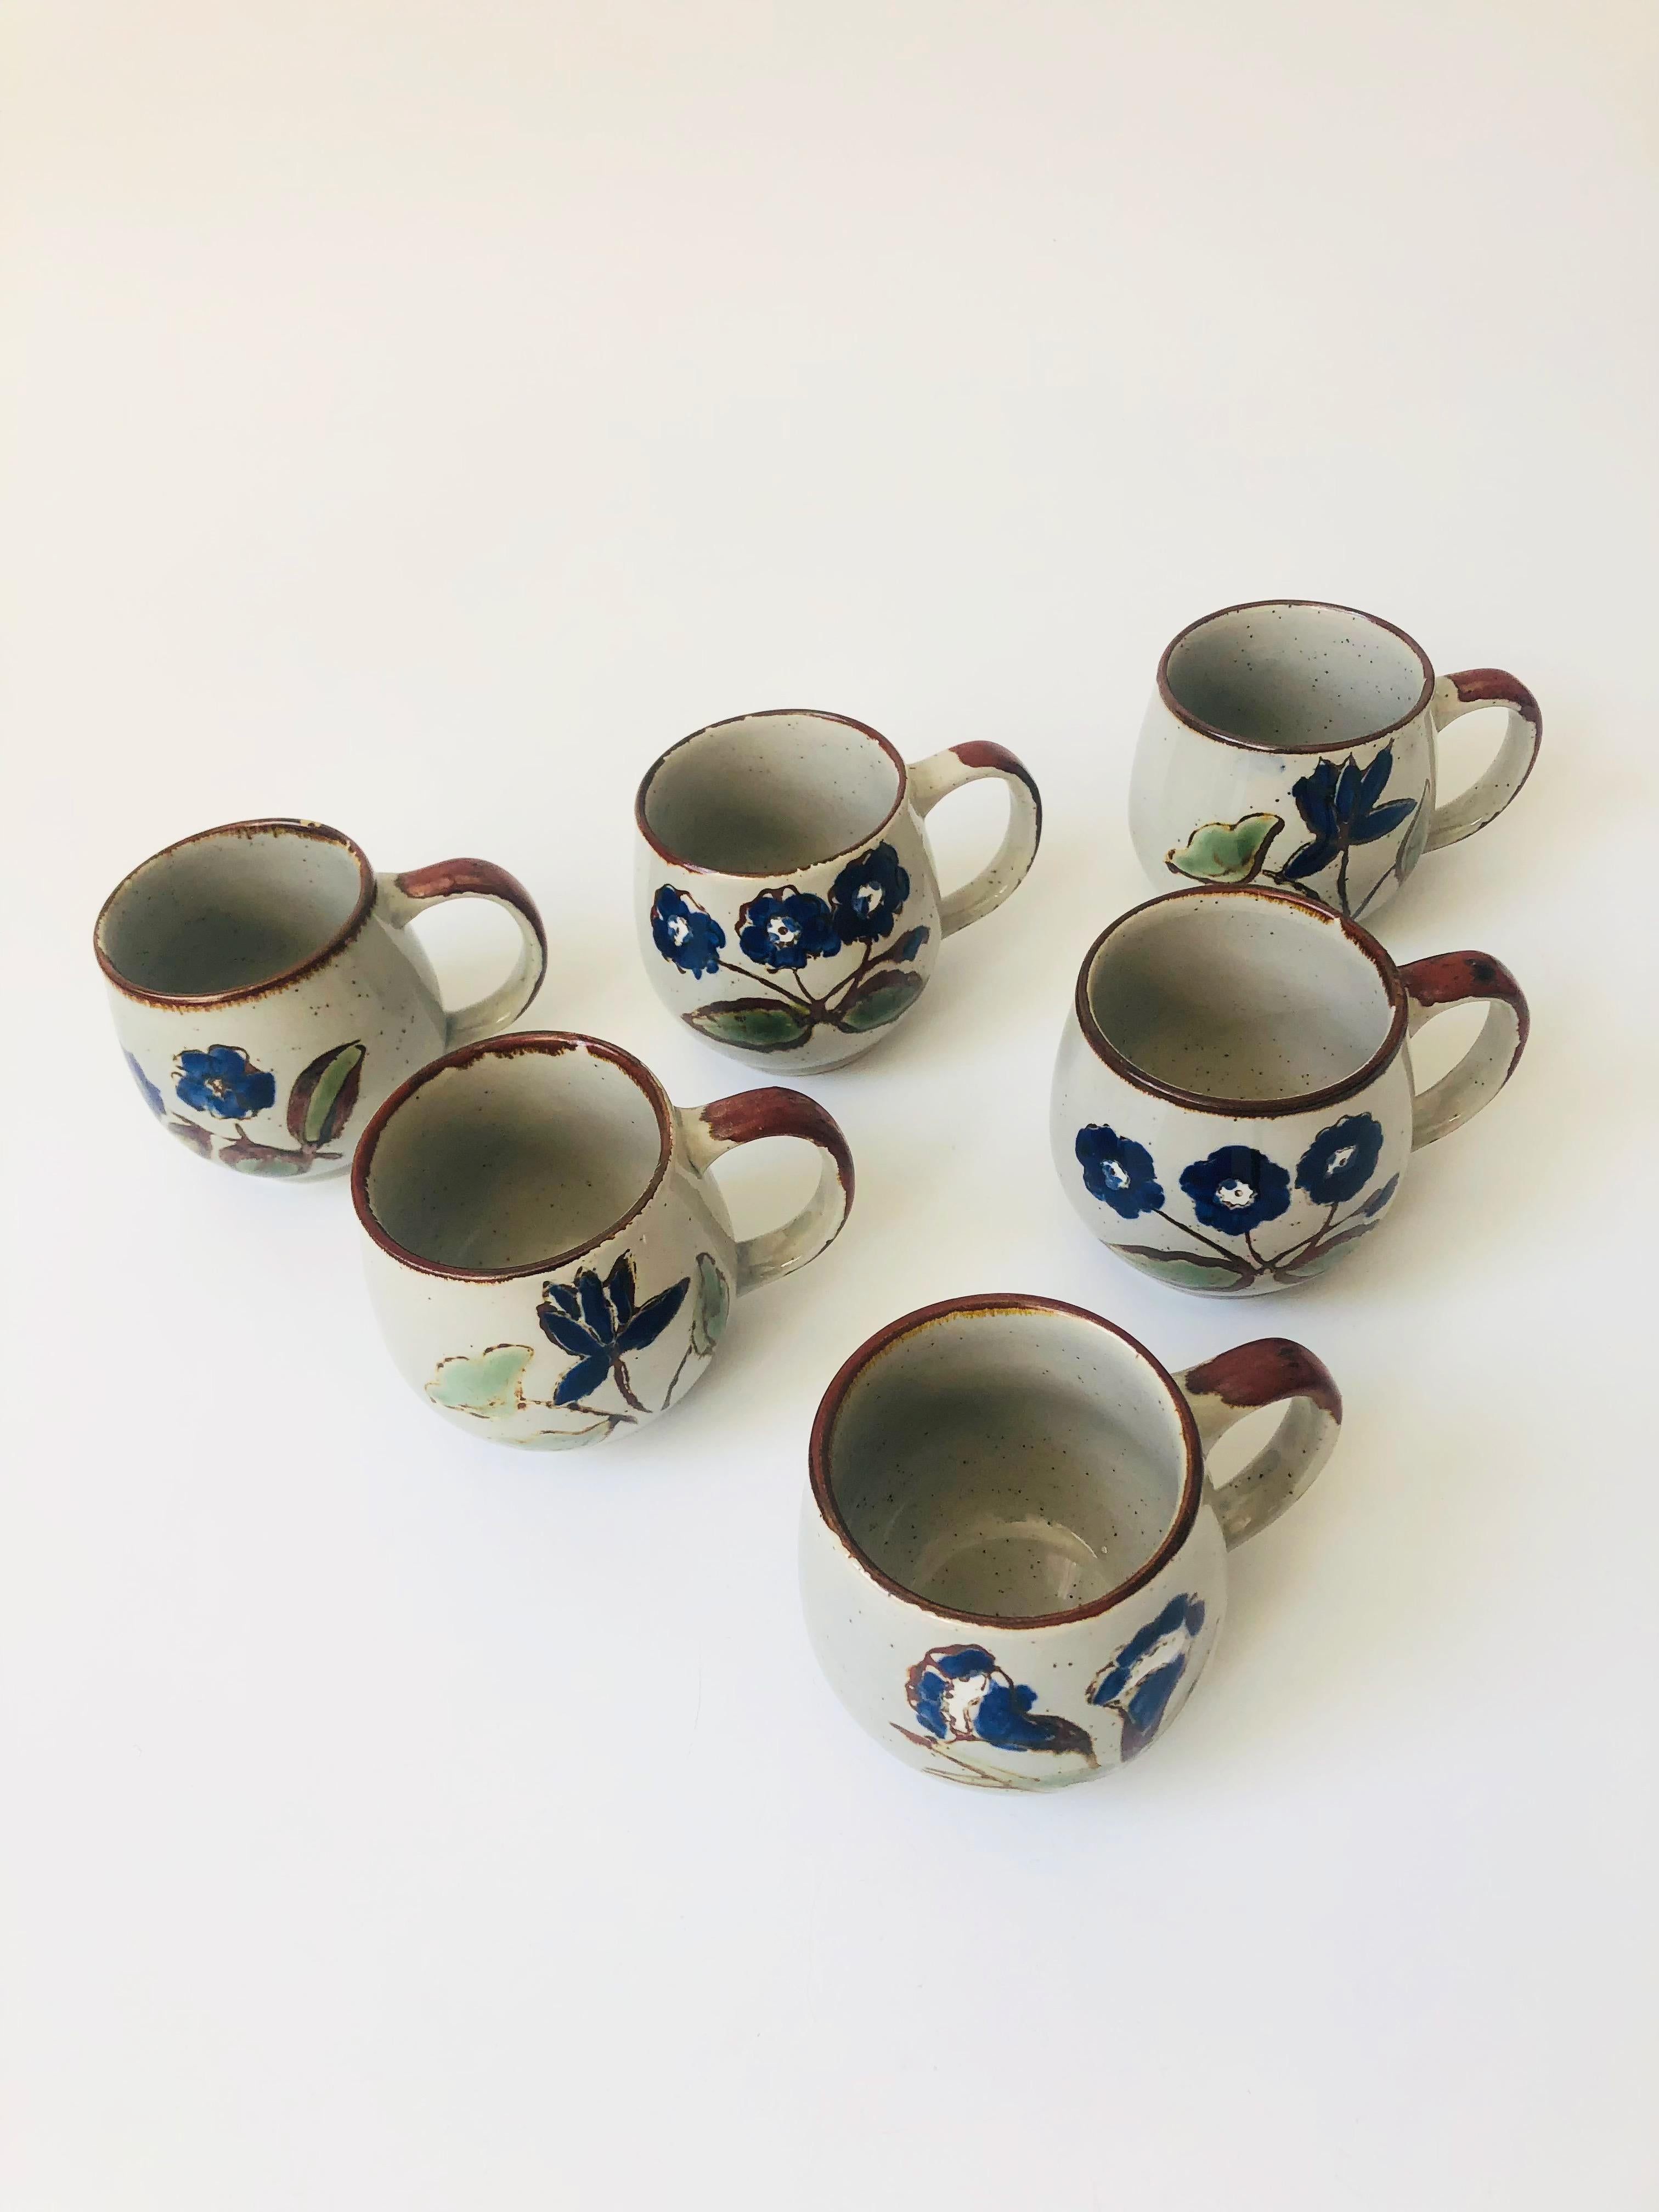 Un ensemble de 6 tasses de poterie vintage. Chacun d'eux présente un joli motif floral bleu peint à la main sur une base grise mouchetée.
 